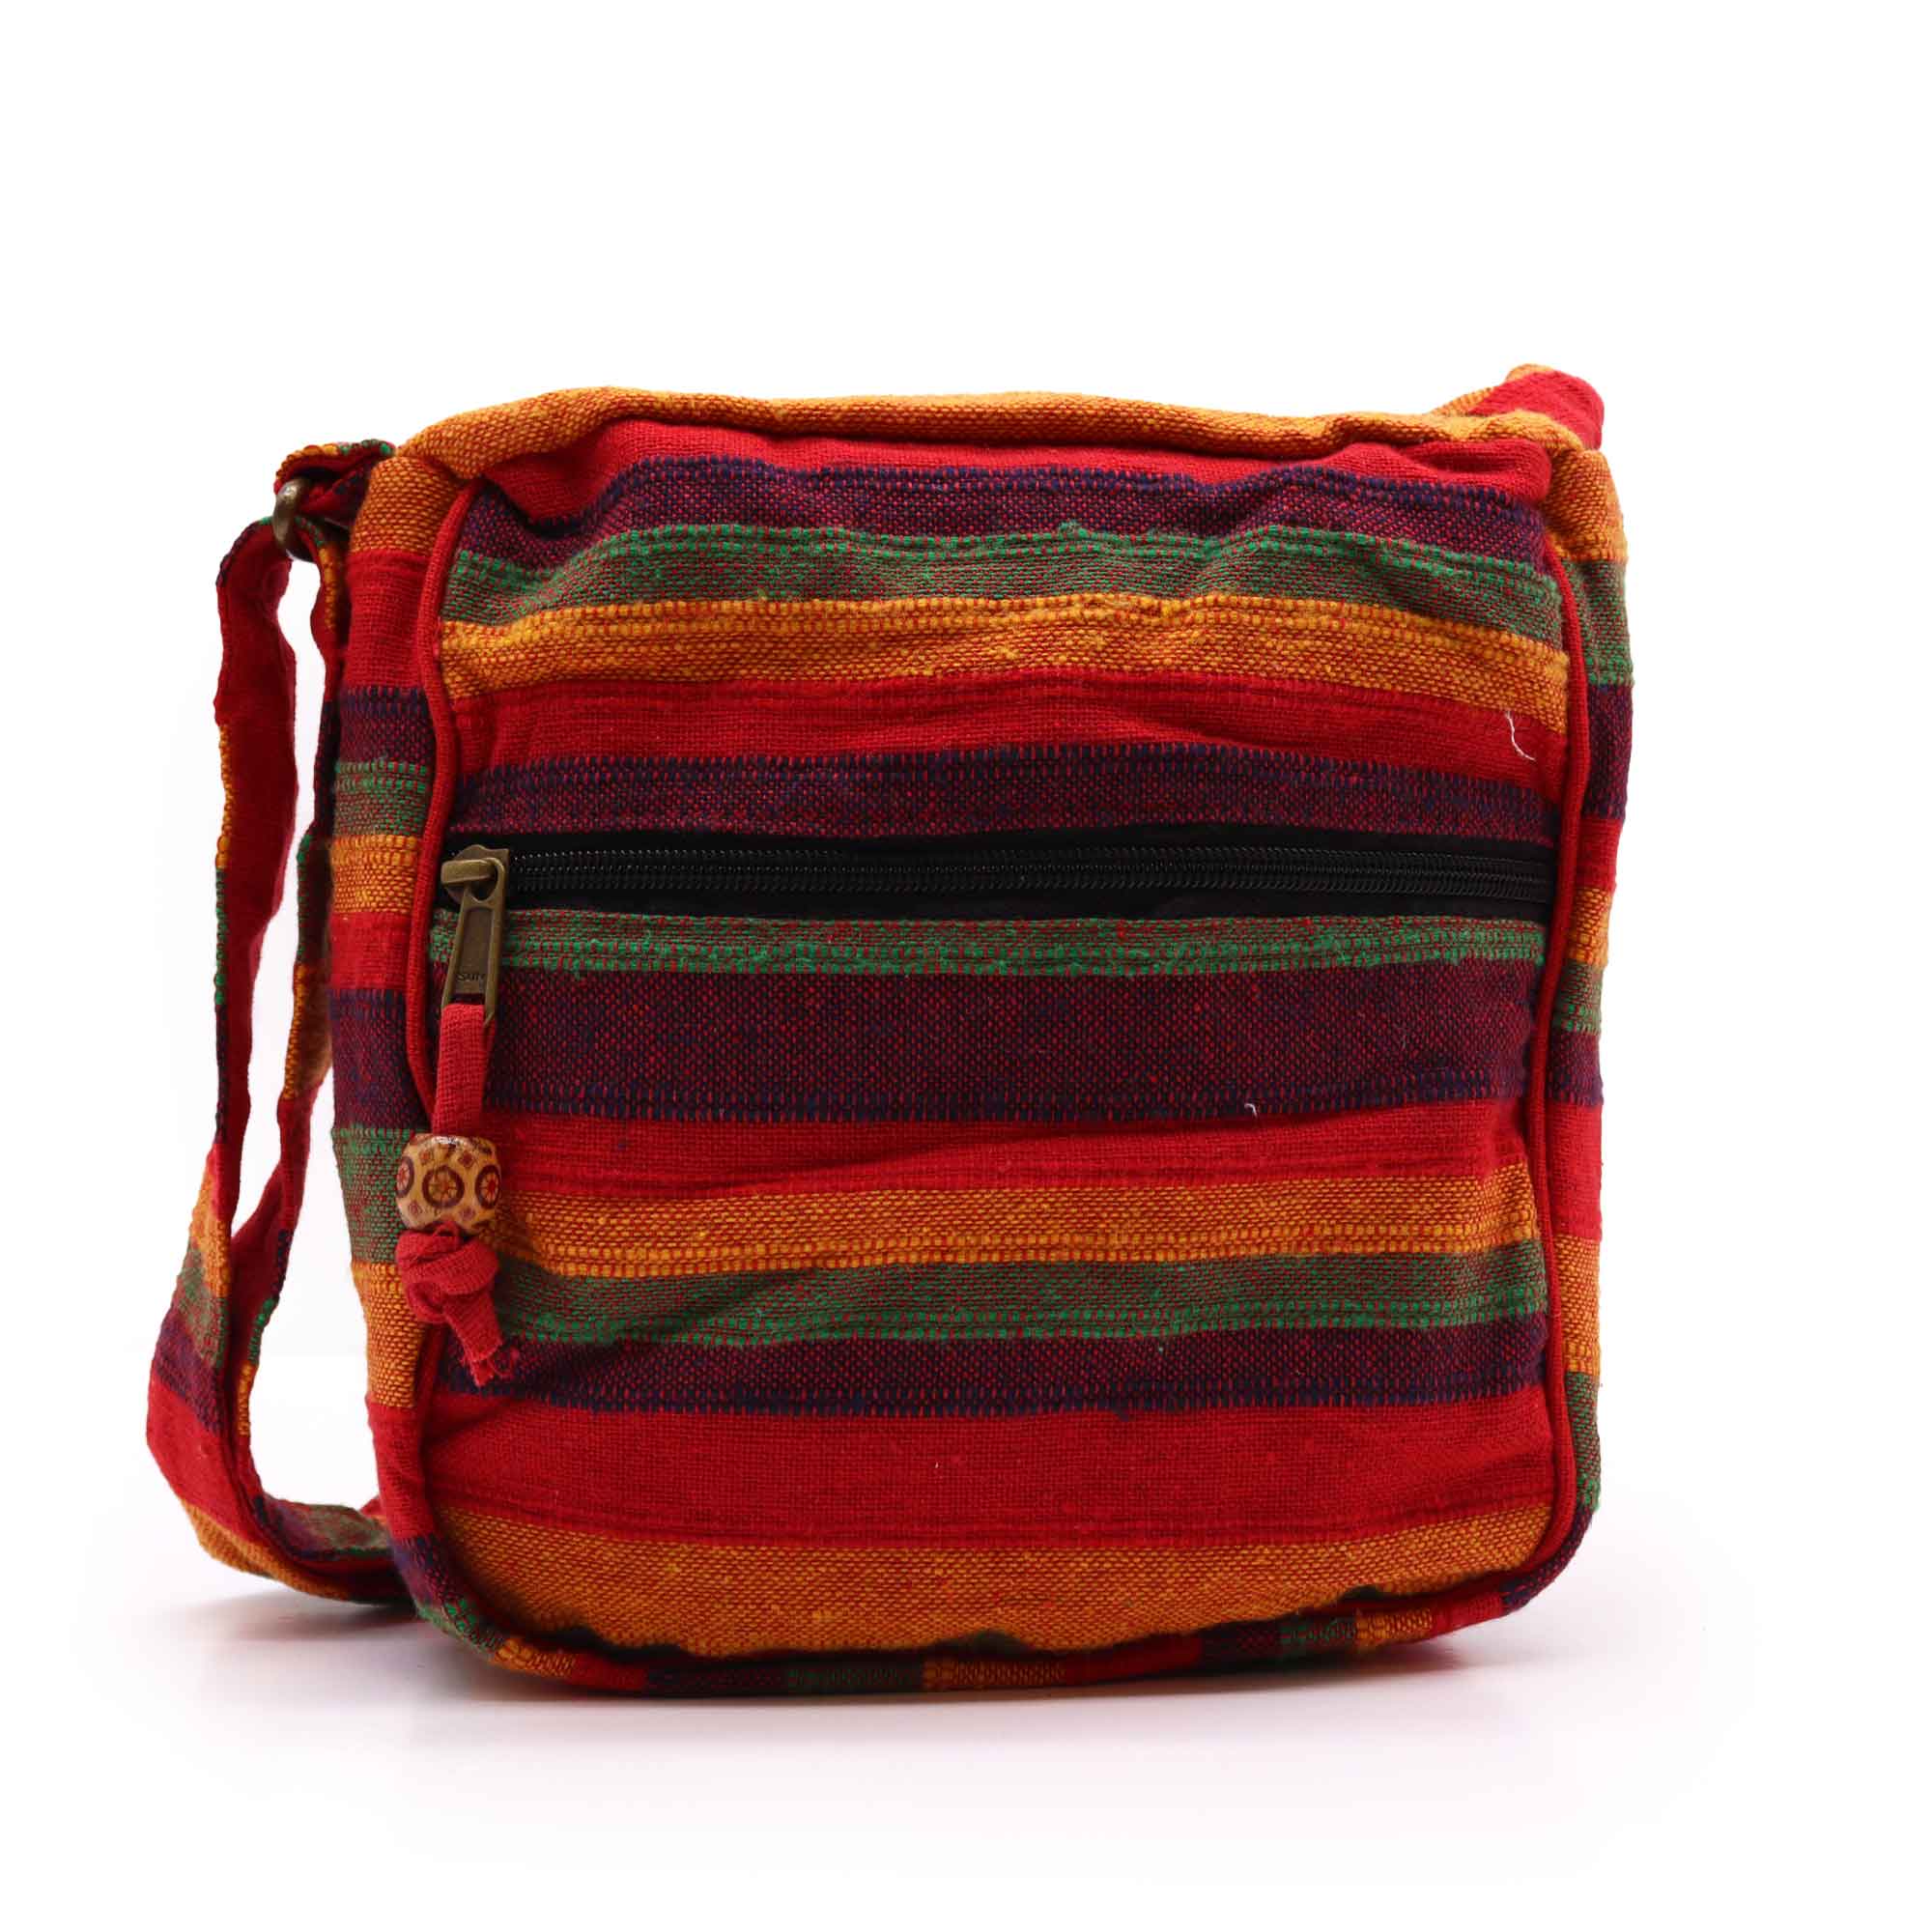 View Lrg Nepal Sling Bag Adjustable Strap Sunset Reds information